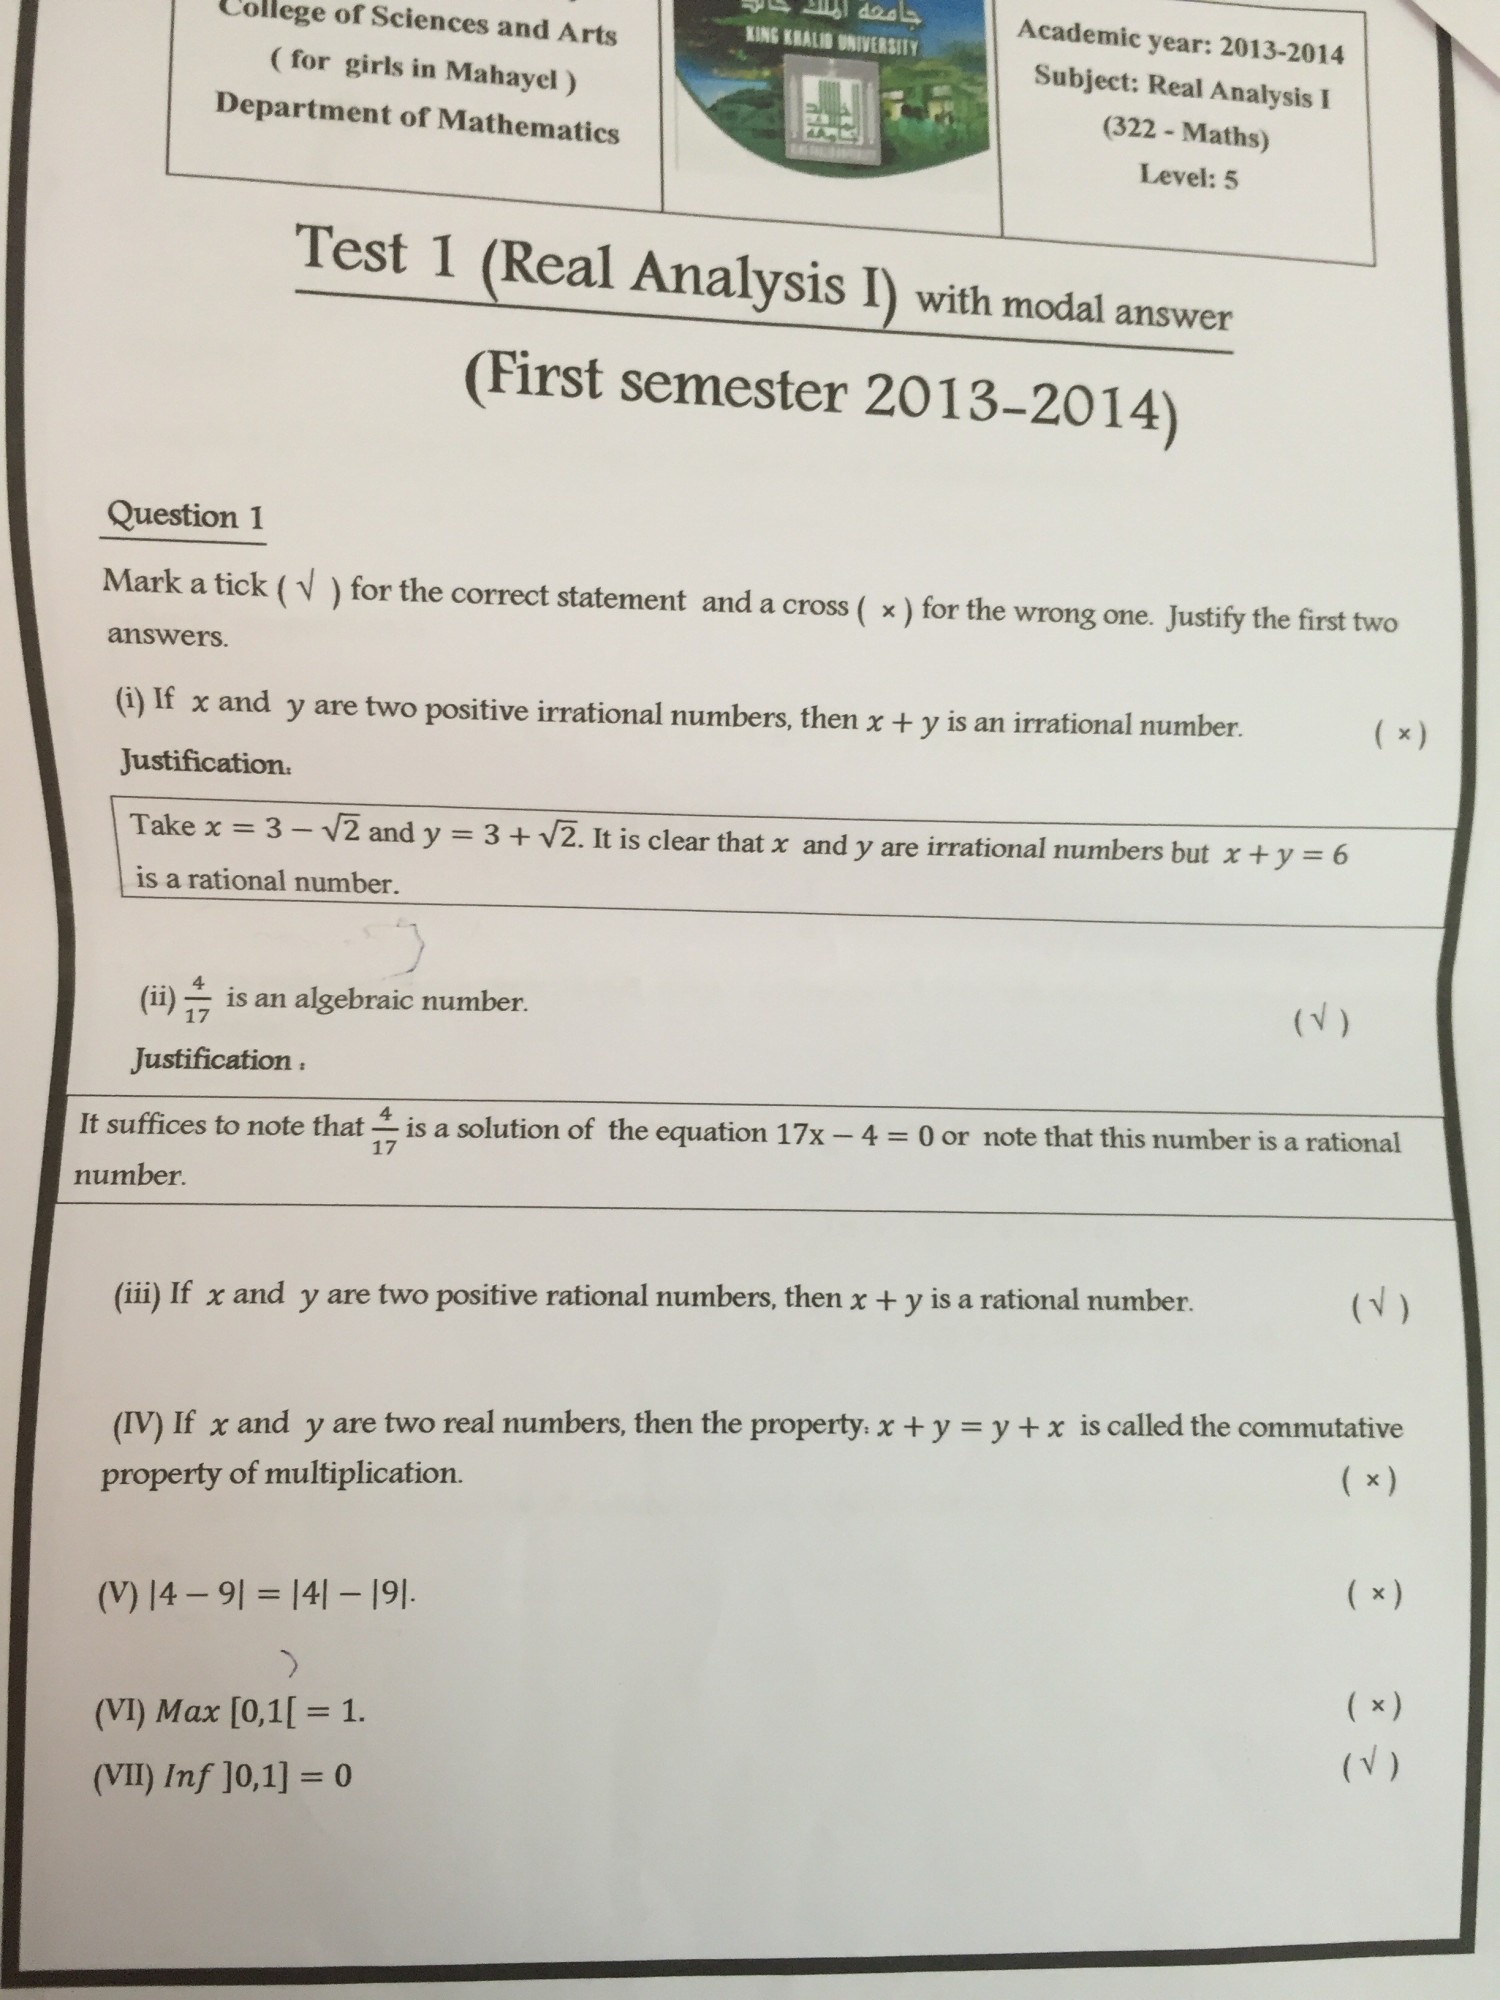 الاختبار الأول للتحليل الحقيقي1 للعام الجامعي 2014